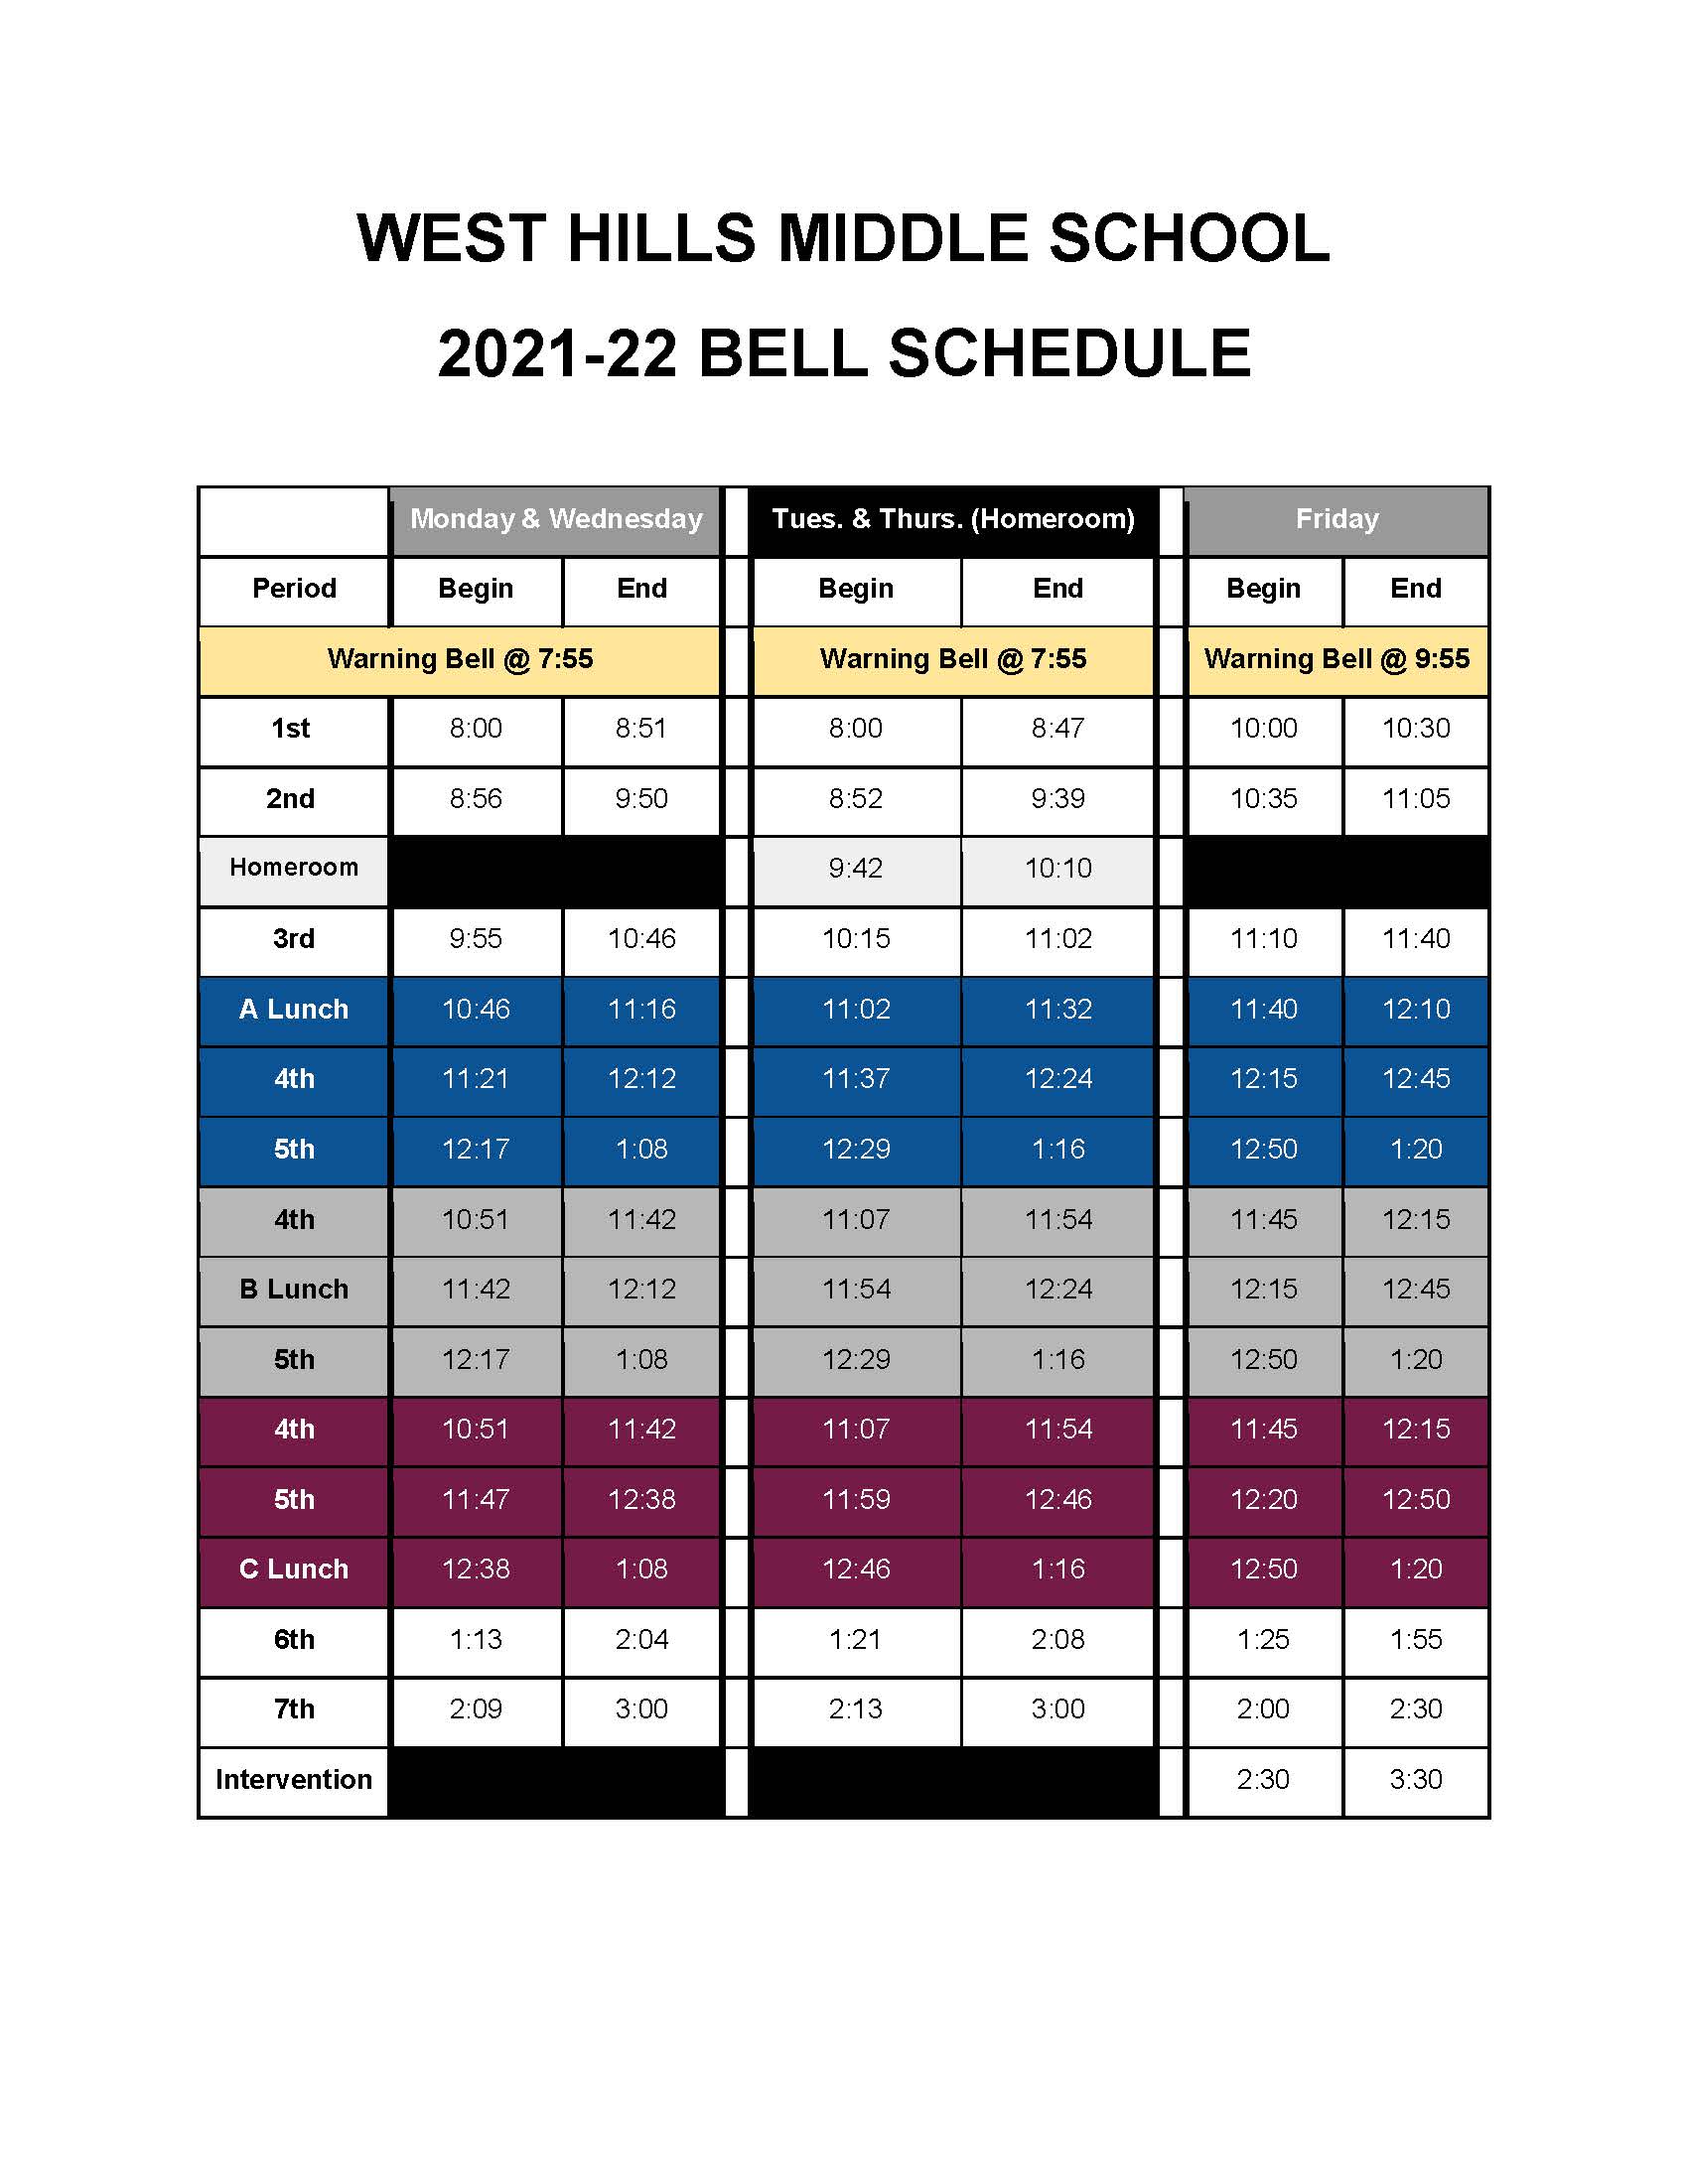 West Hills Middle School Regular Bell Schedule